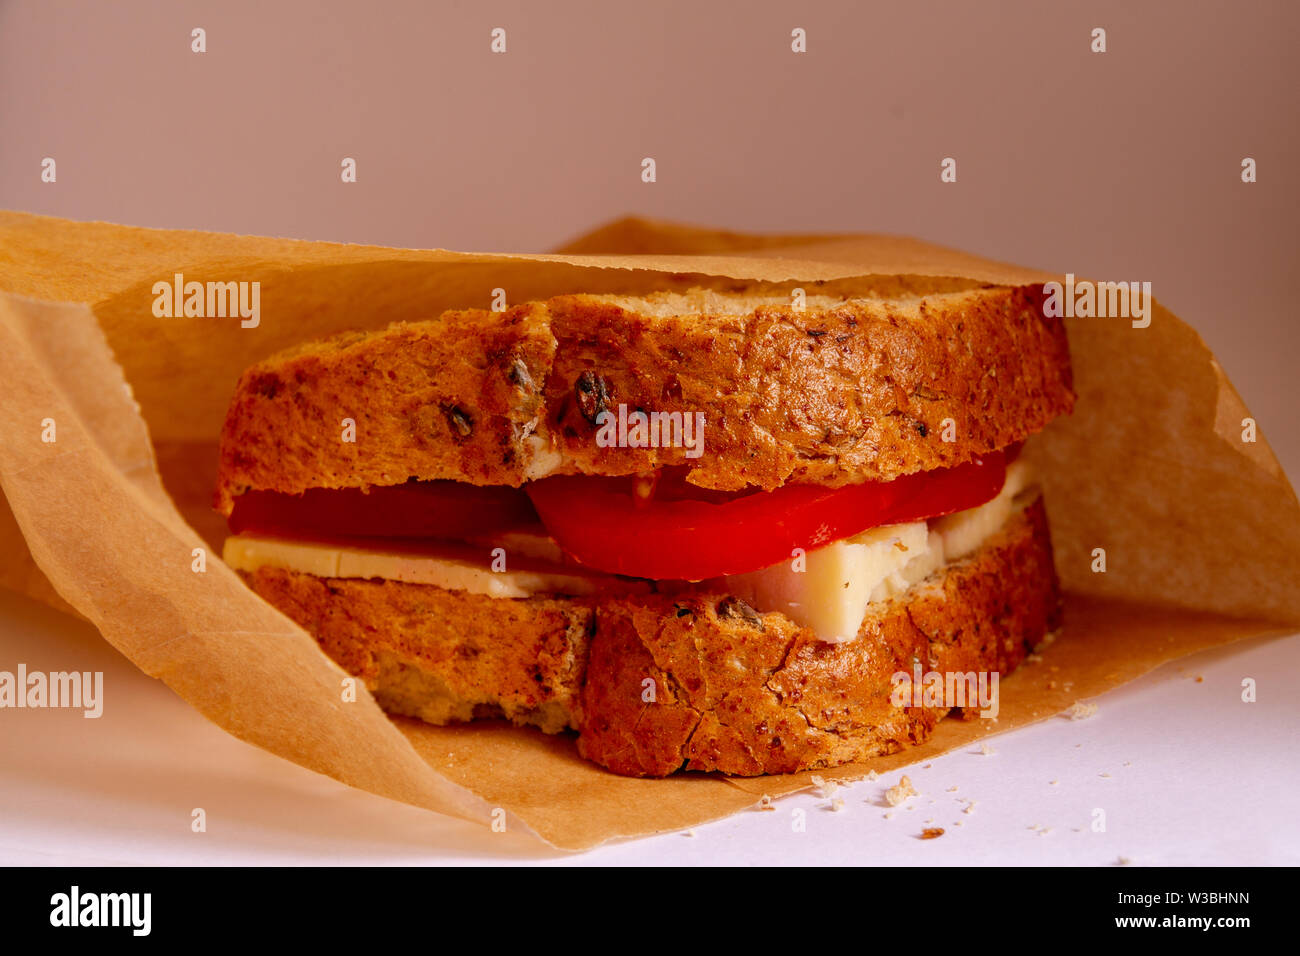 À la recherche dans un sac en papier brun à la tomate et fromage sandwich sur pain grenier Banque D'Images